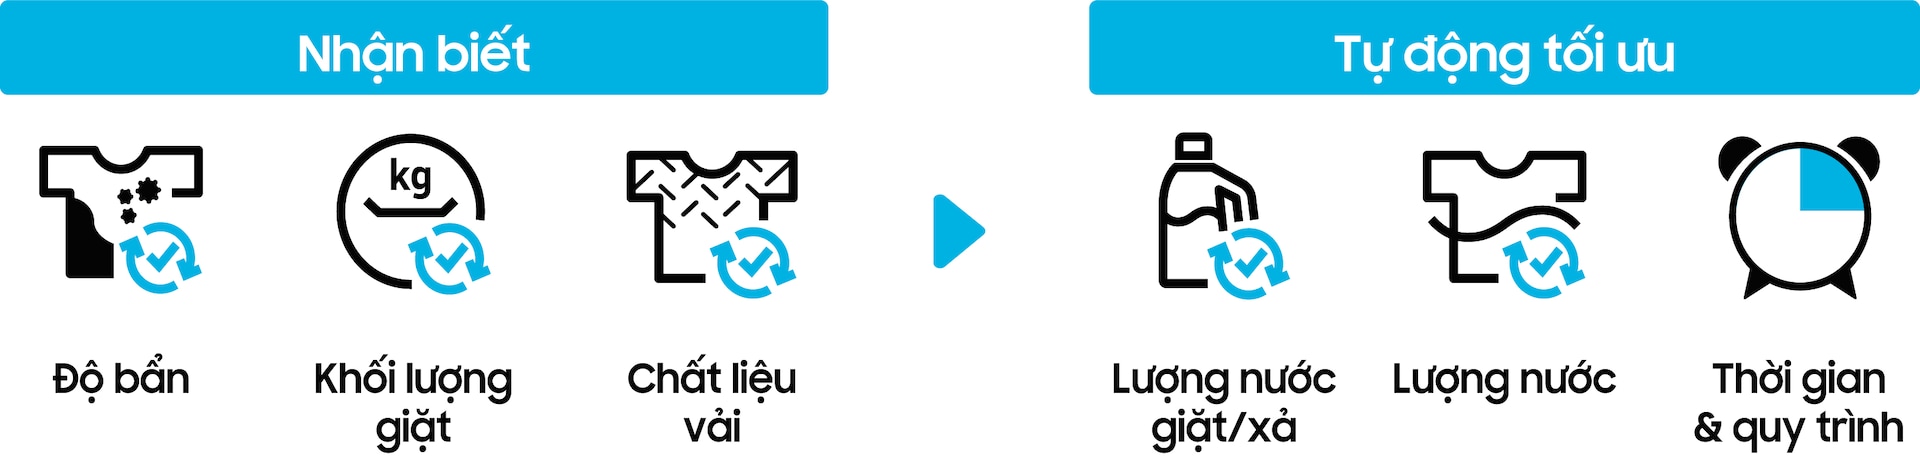 máy giặt thông minh Samsung Bespoke nhận biết độ bẩn, khối lượng giặt, chất liệu vải và tự động tối ưu lượng nước giặt/xả, lượng nước, thời gian và quy trình